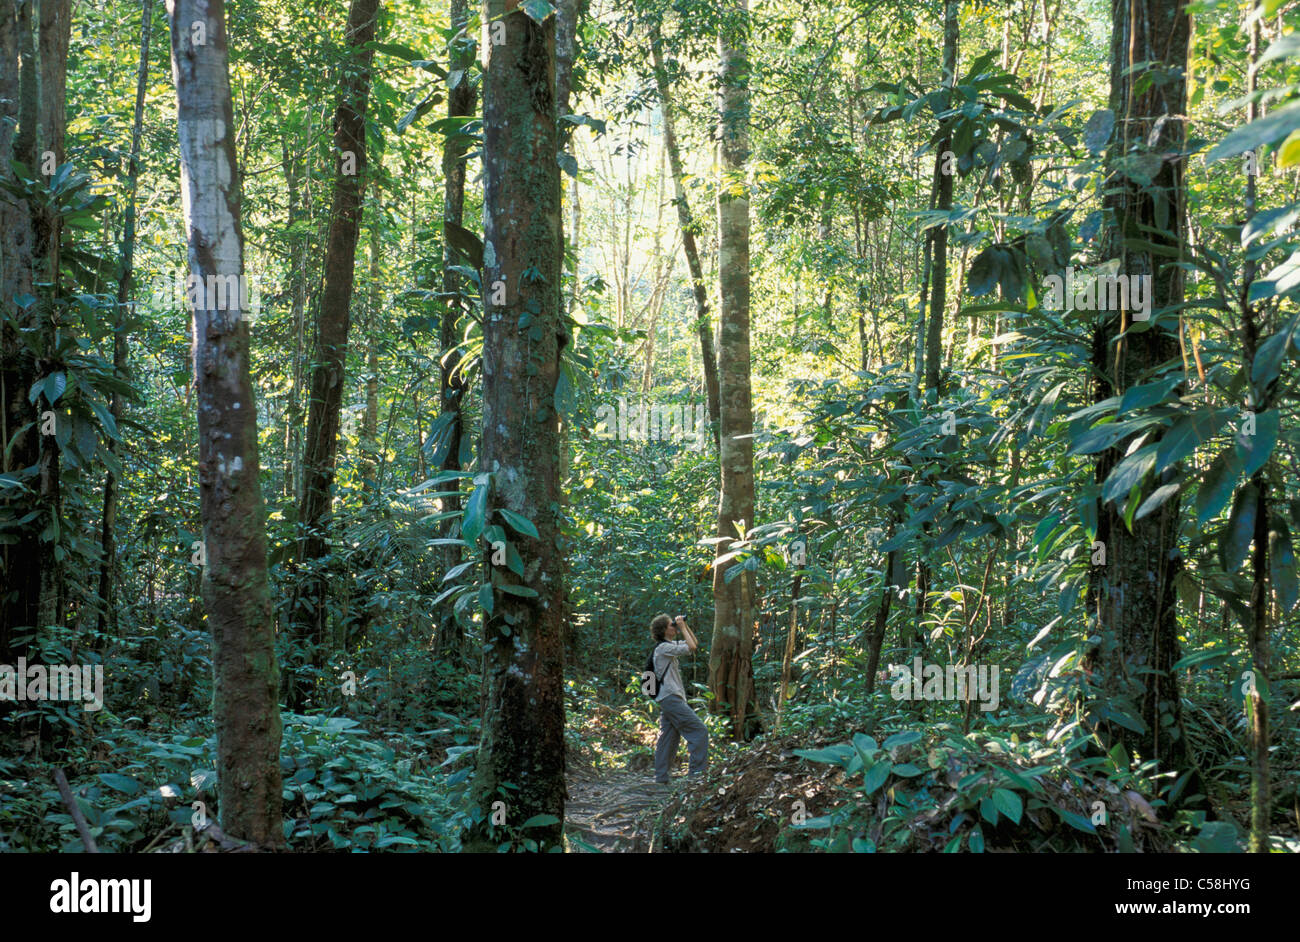 Forêt tropicale, réserve naturelle, près de Presidente Figueiredo, Amazonie, Brésil, Amérique du Sud, dans la jungle, Banque D'Images